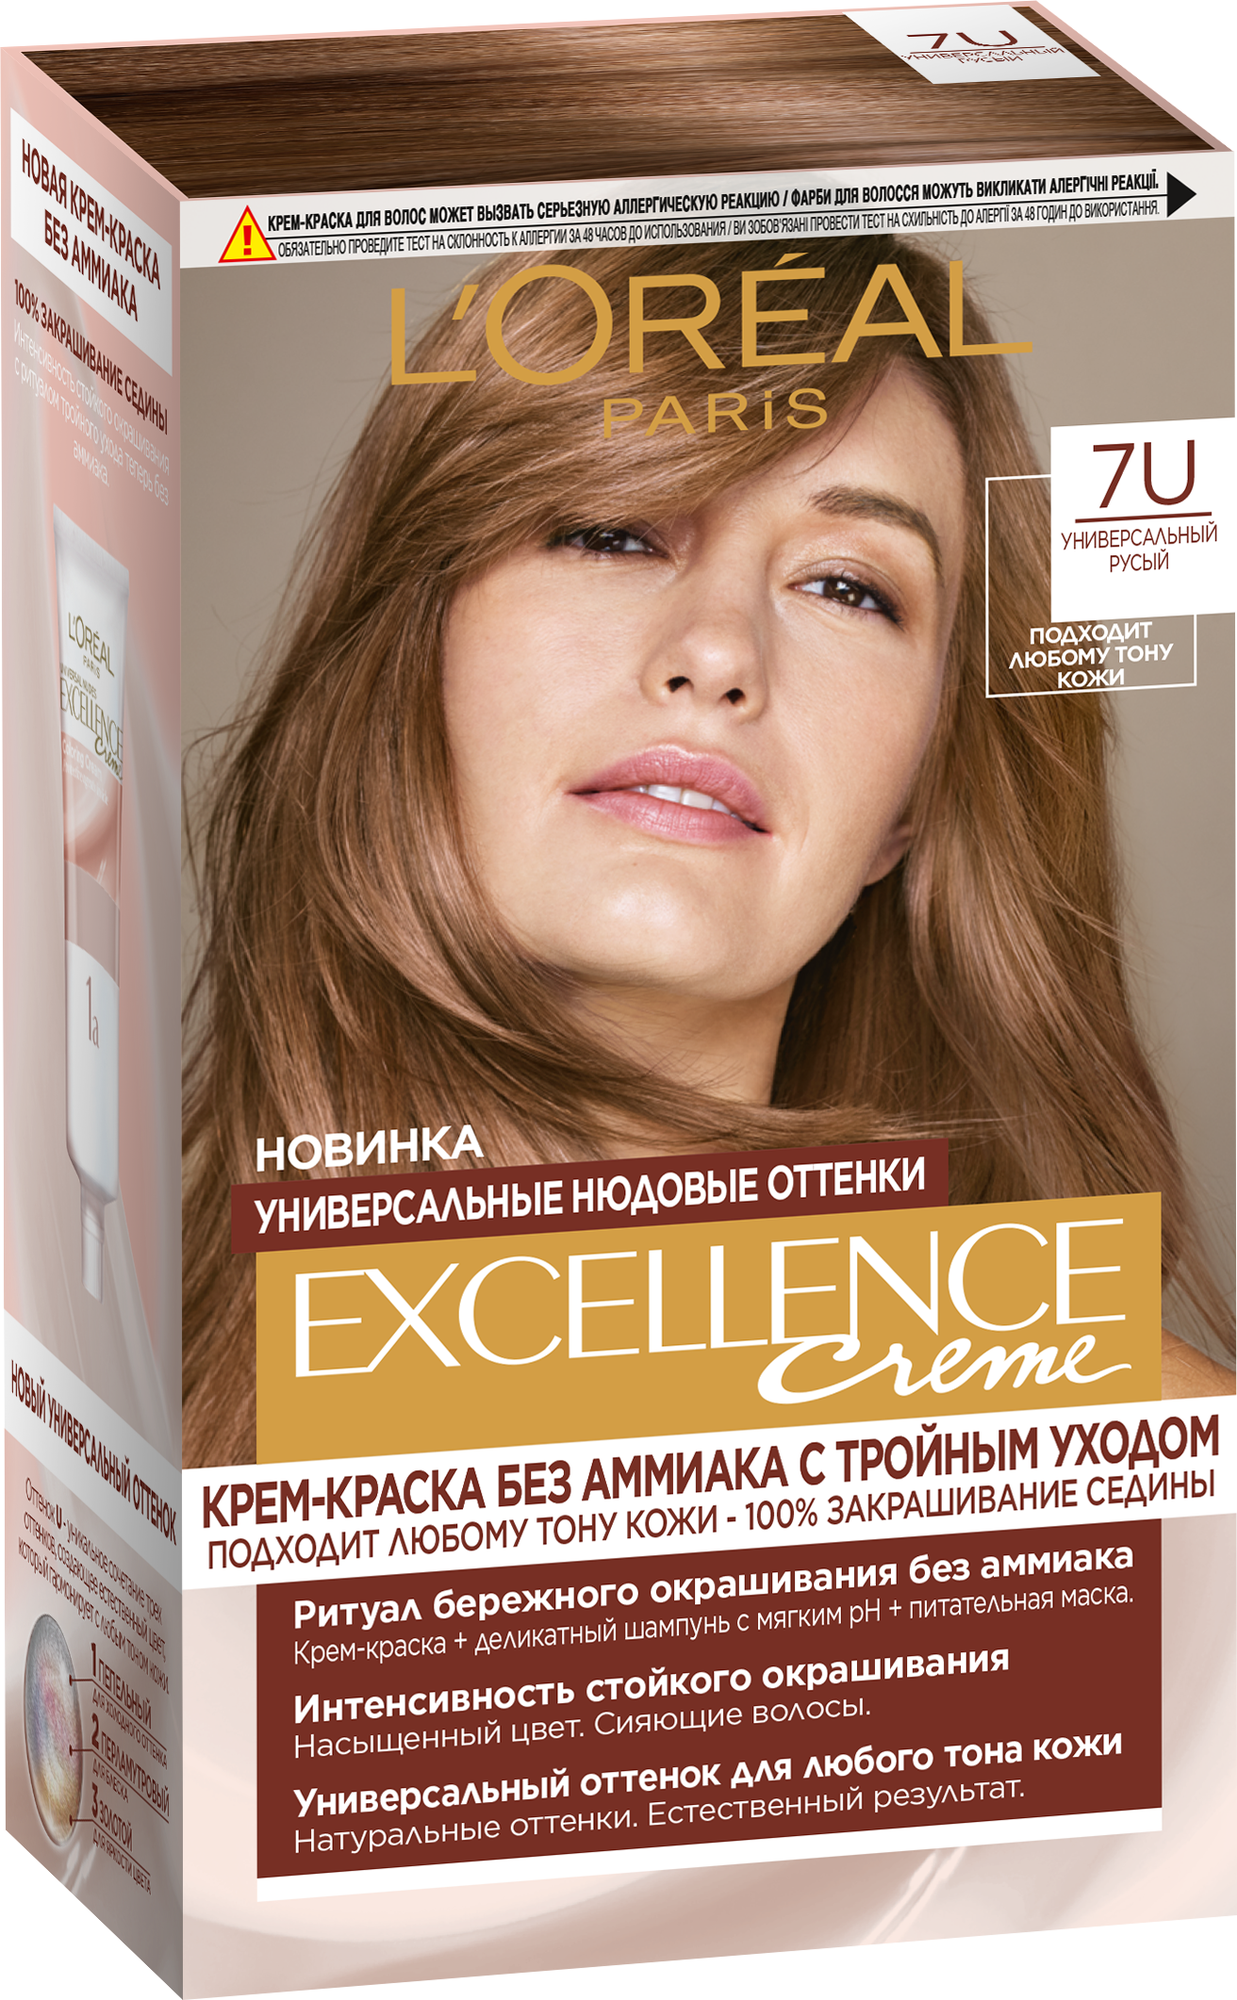 L'Oreal Paris Excellence Creme Universal Nudes крем-краска для волос без амиака, 7U универсальный русый